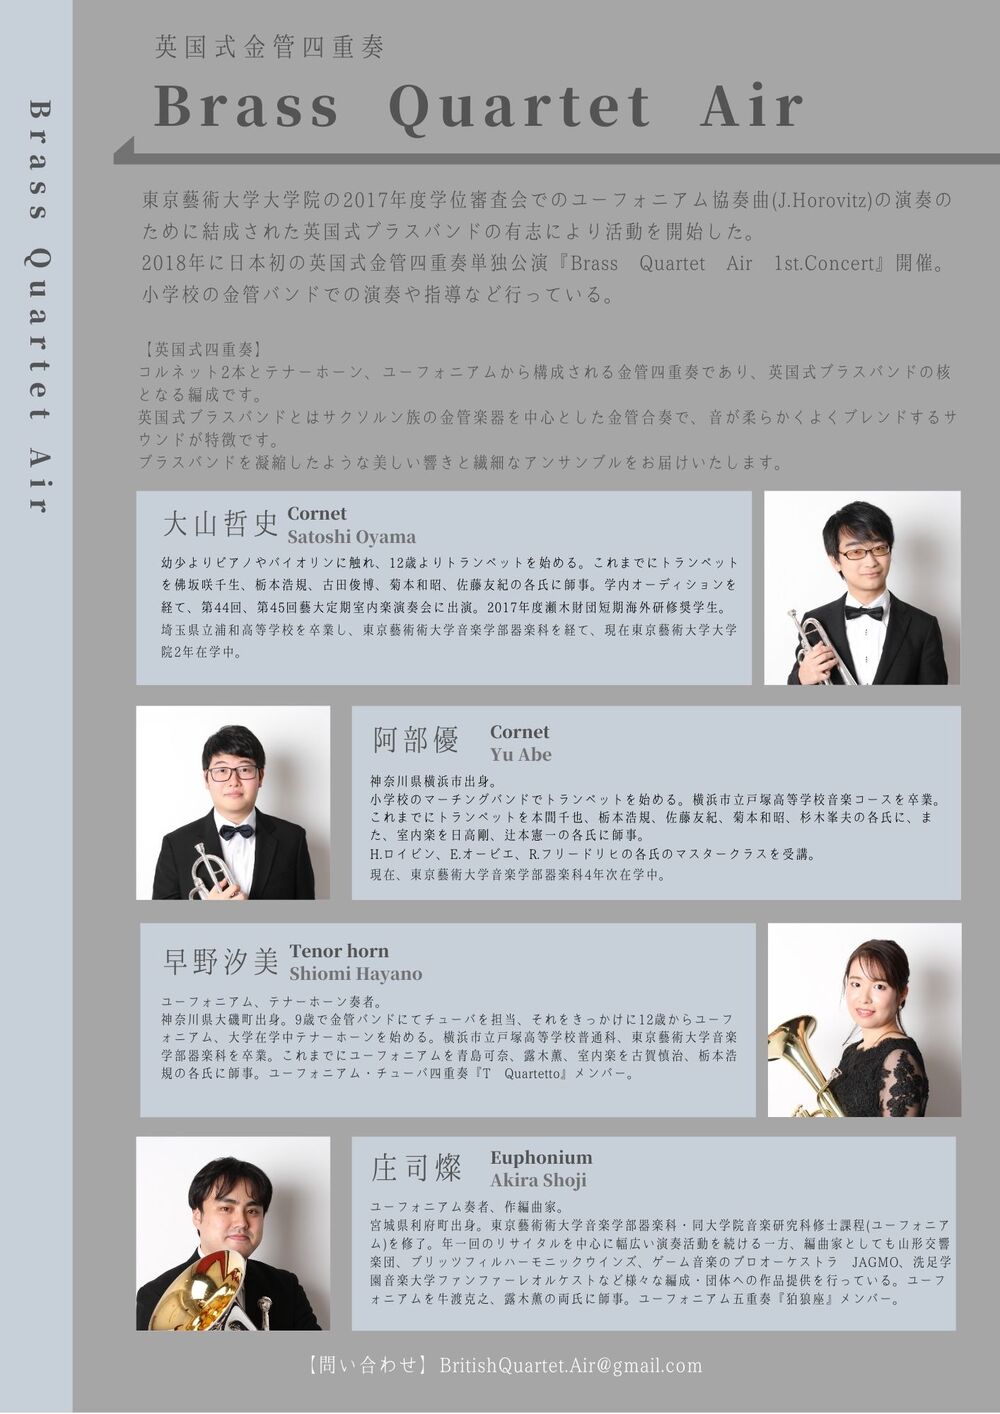 Brass Quartet Air 2nd. Concert【Brass Quartet Air】 | 大田区民 